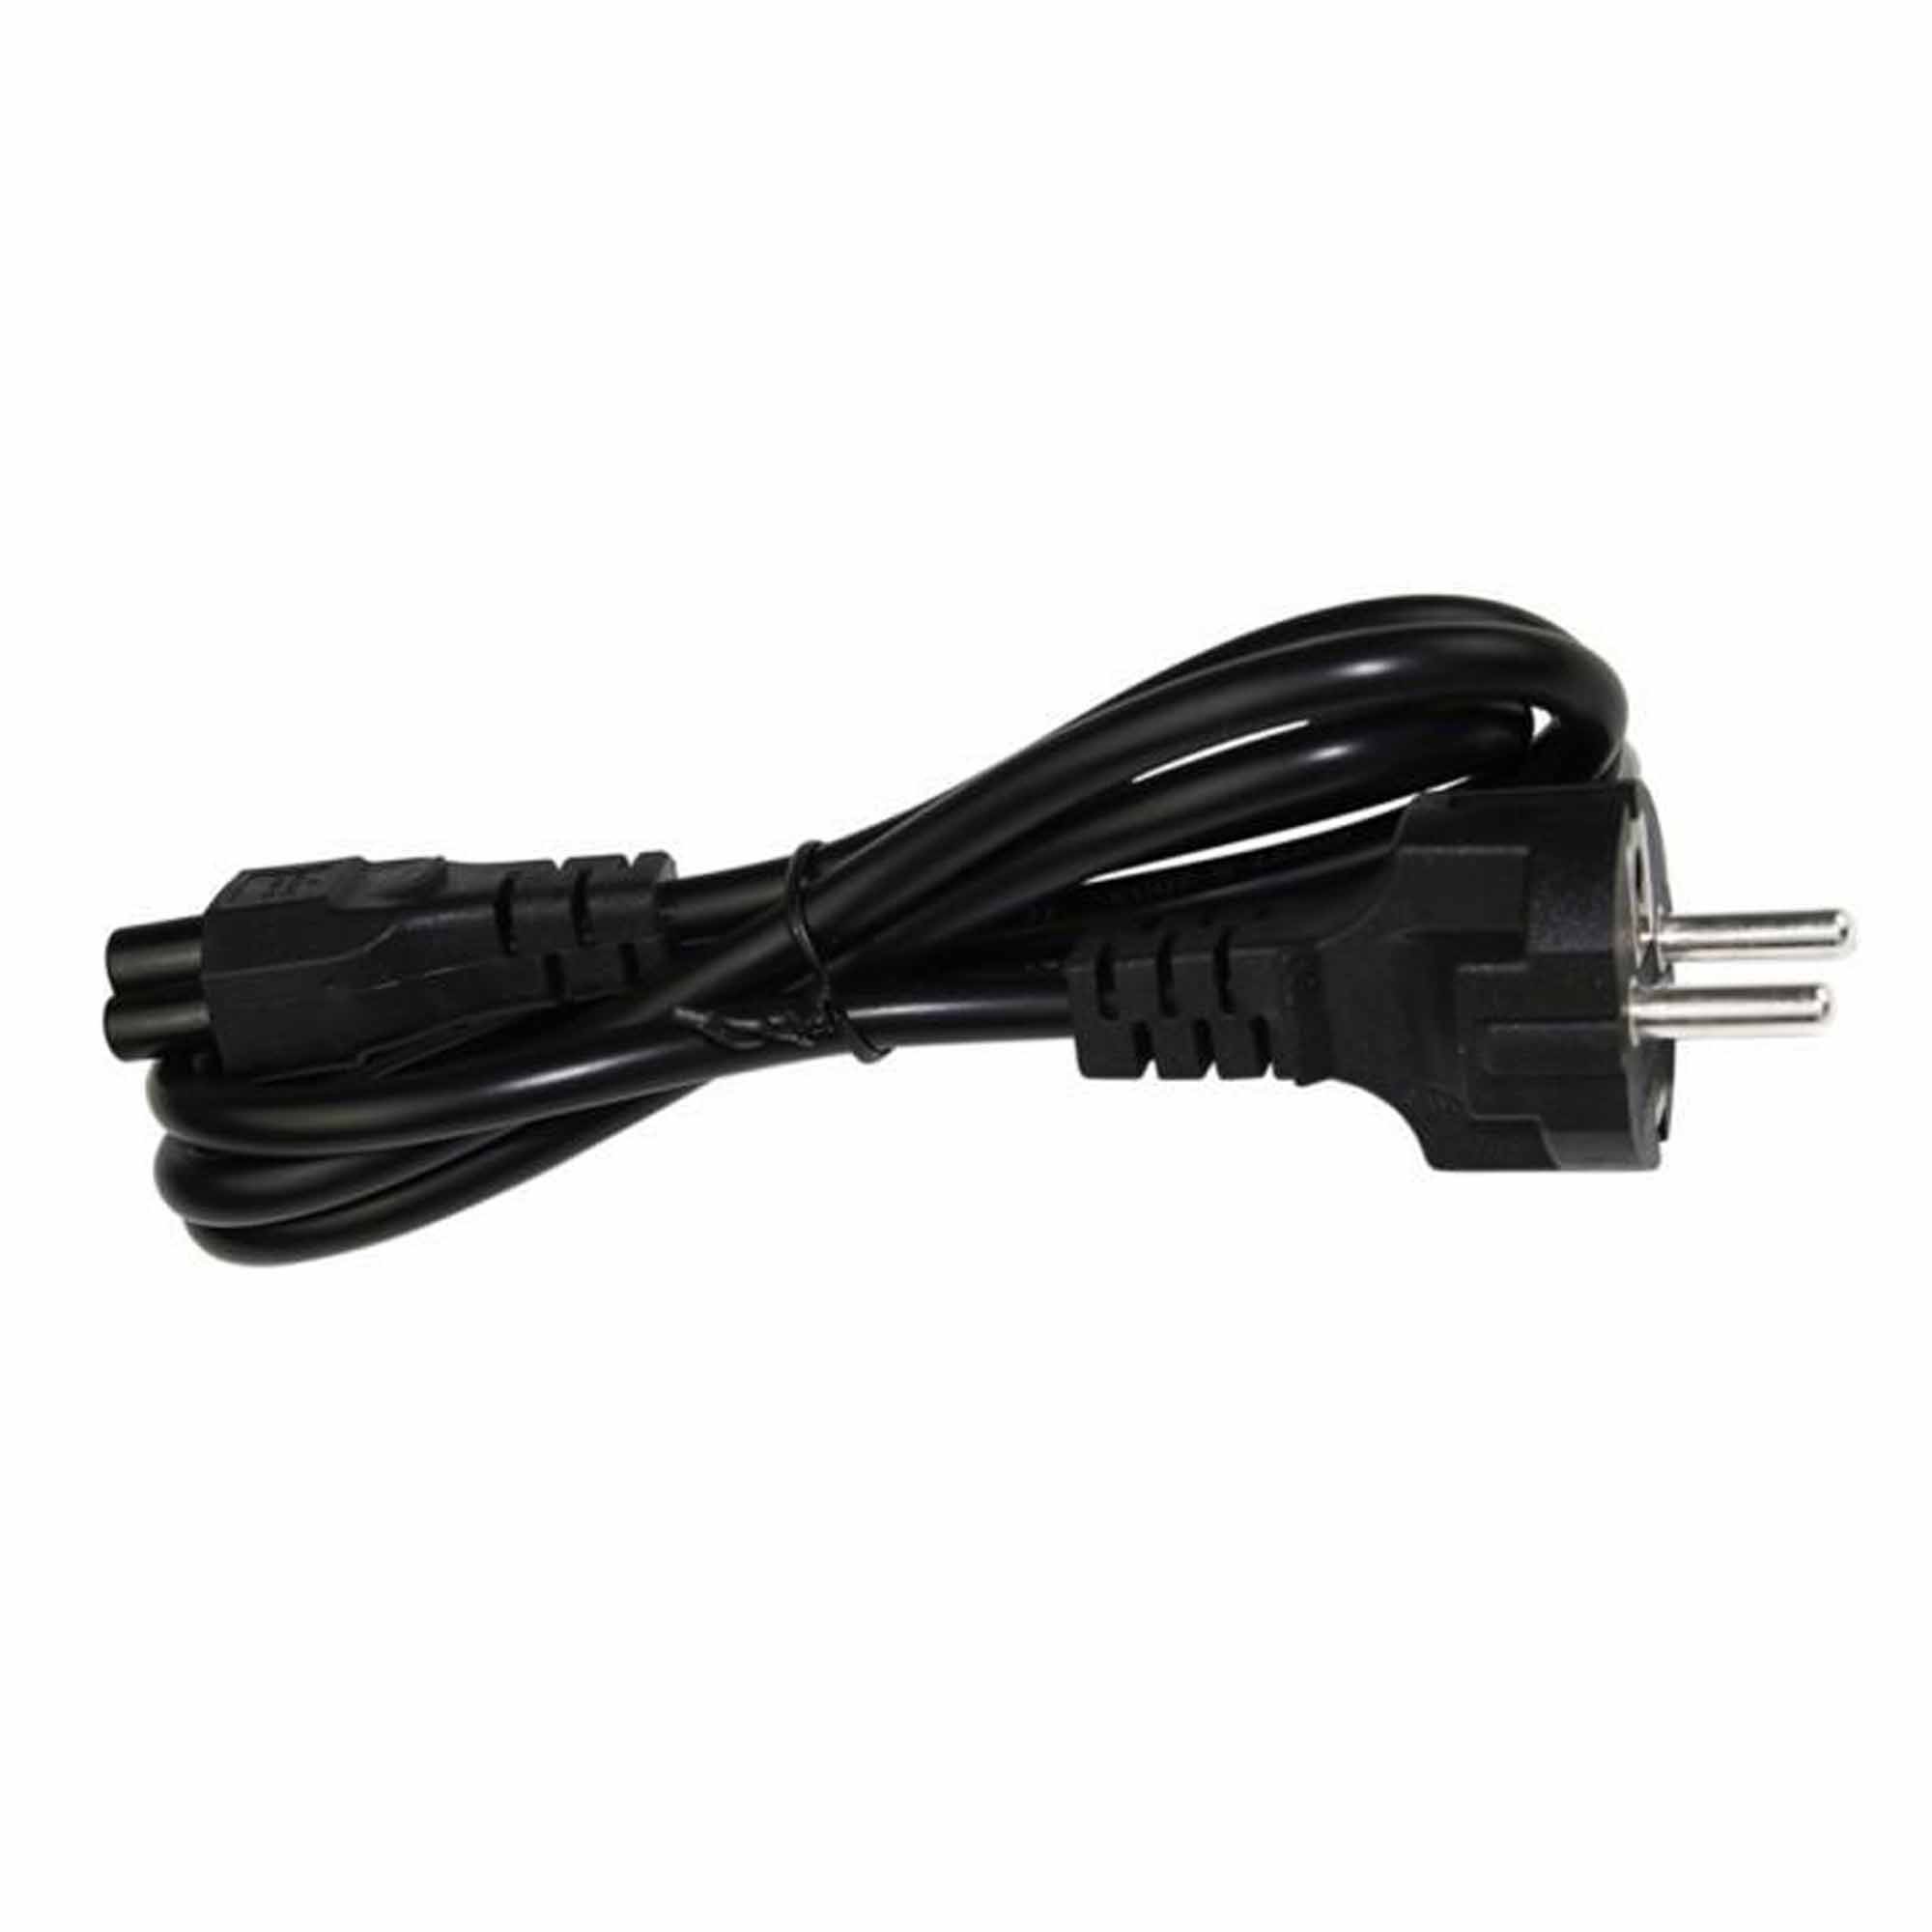 Cable de corriente para cargador de portátil / laptop tipo trébol